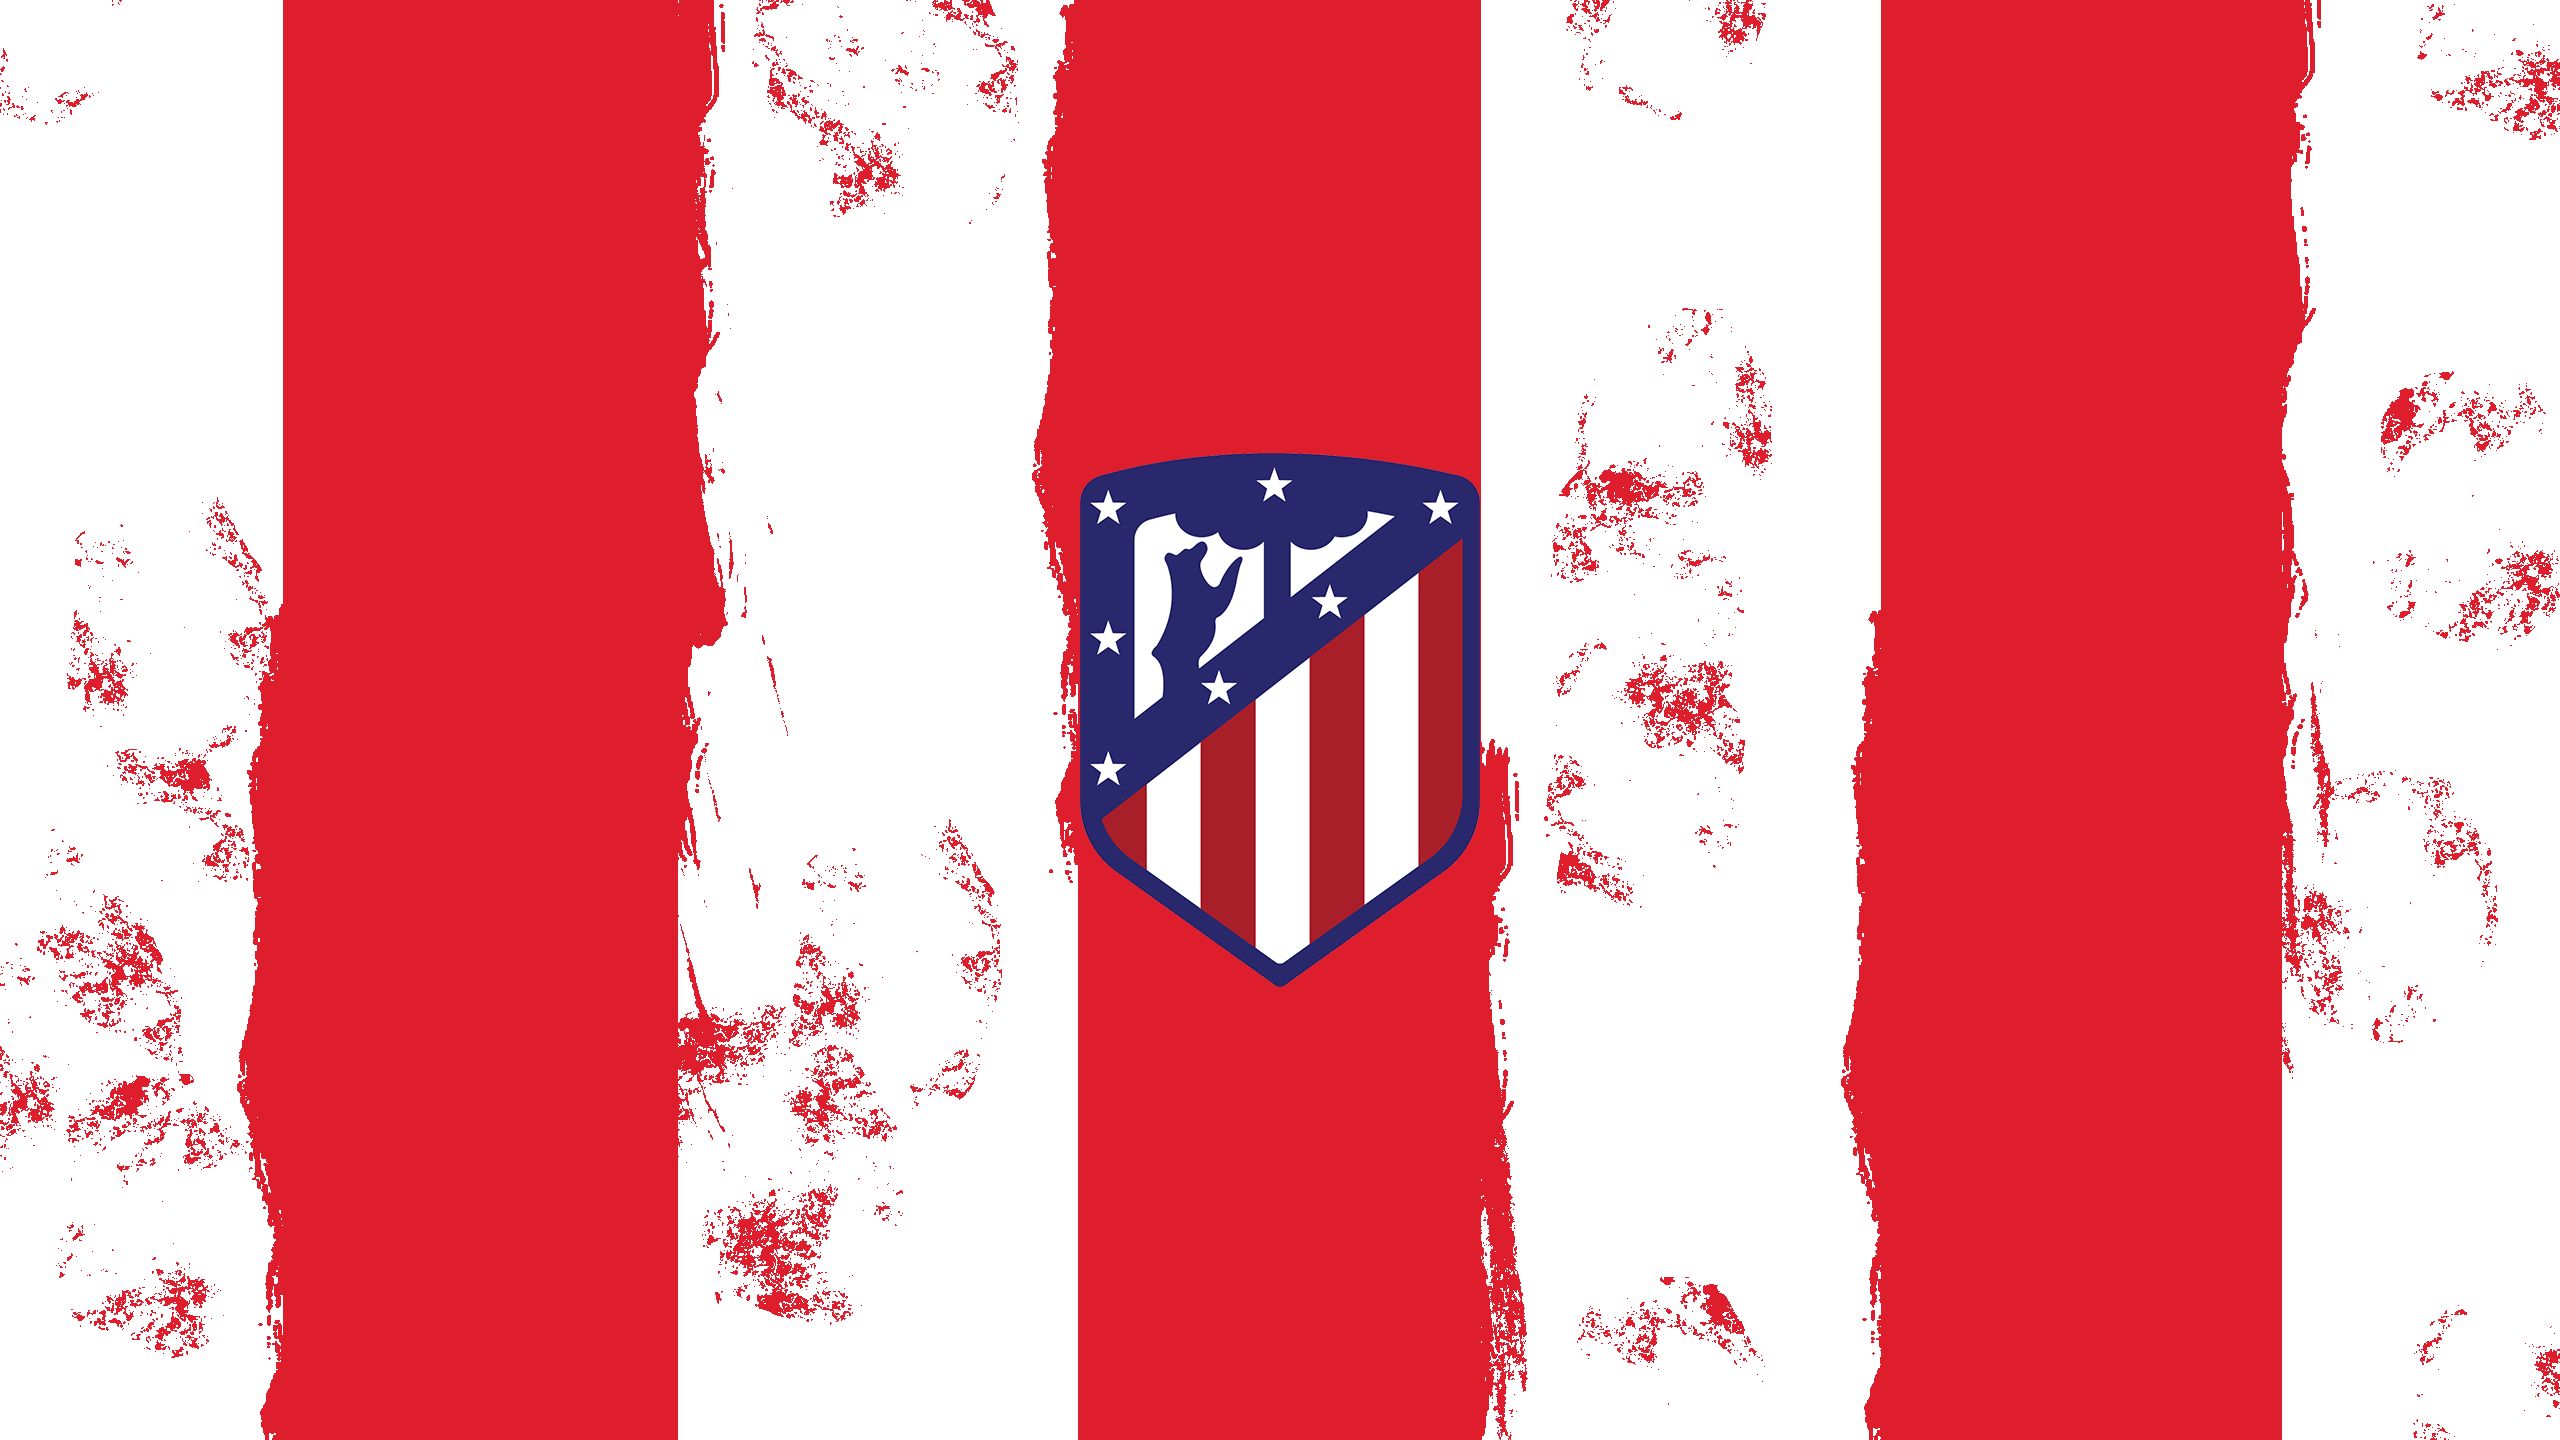 Download mobile wallpaper Sports, Logo, Emblem, Soccer, Atlético Madrid for free.